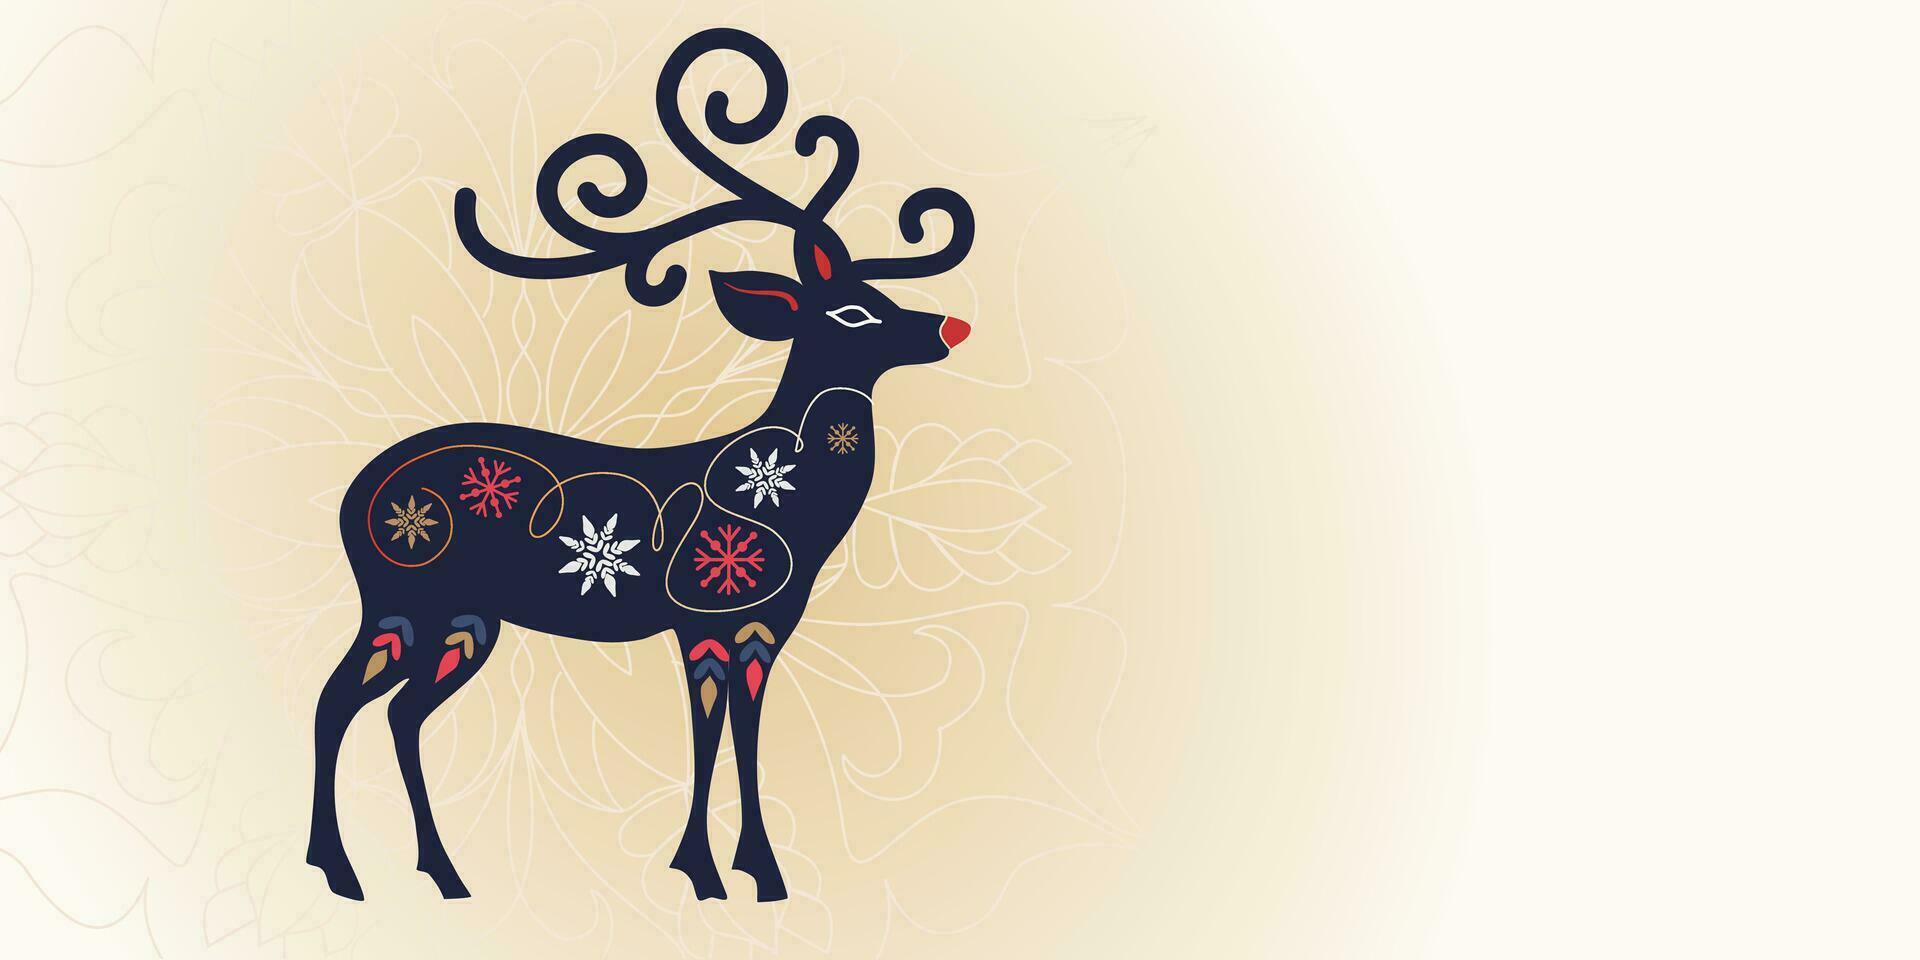 gloeiend hert silhouet met ornament sneeuwvlokken, Kerstmis banier sjabloon met leeg ruimte voor tekst. Kerstmis ornament licht achtergrond vector